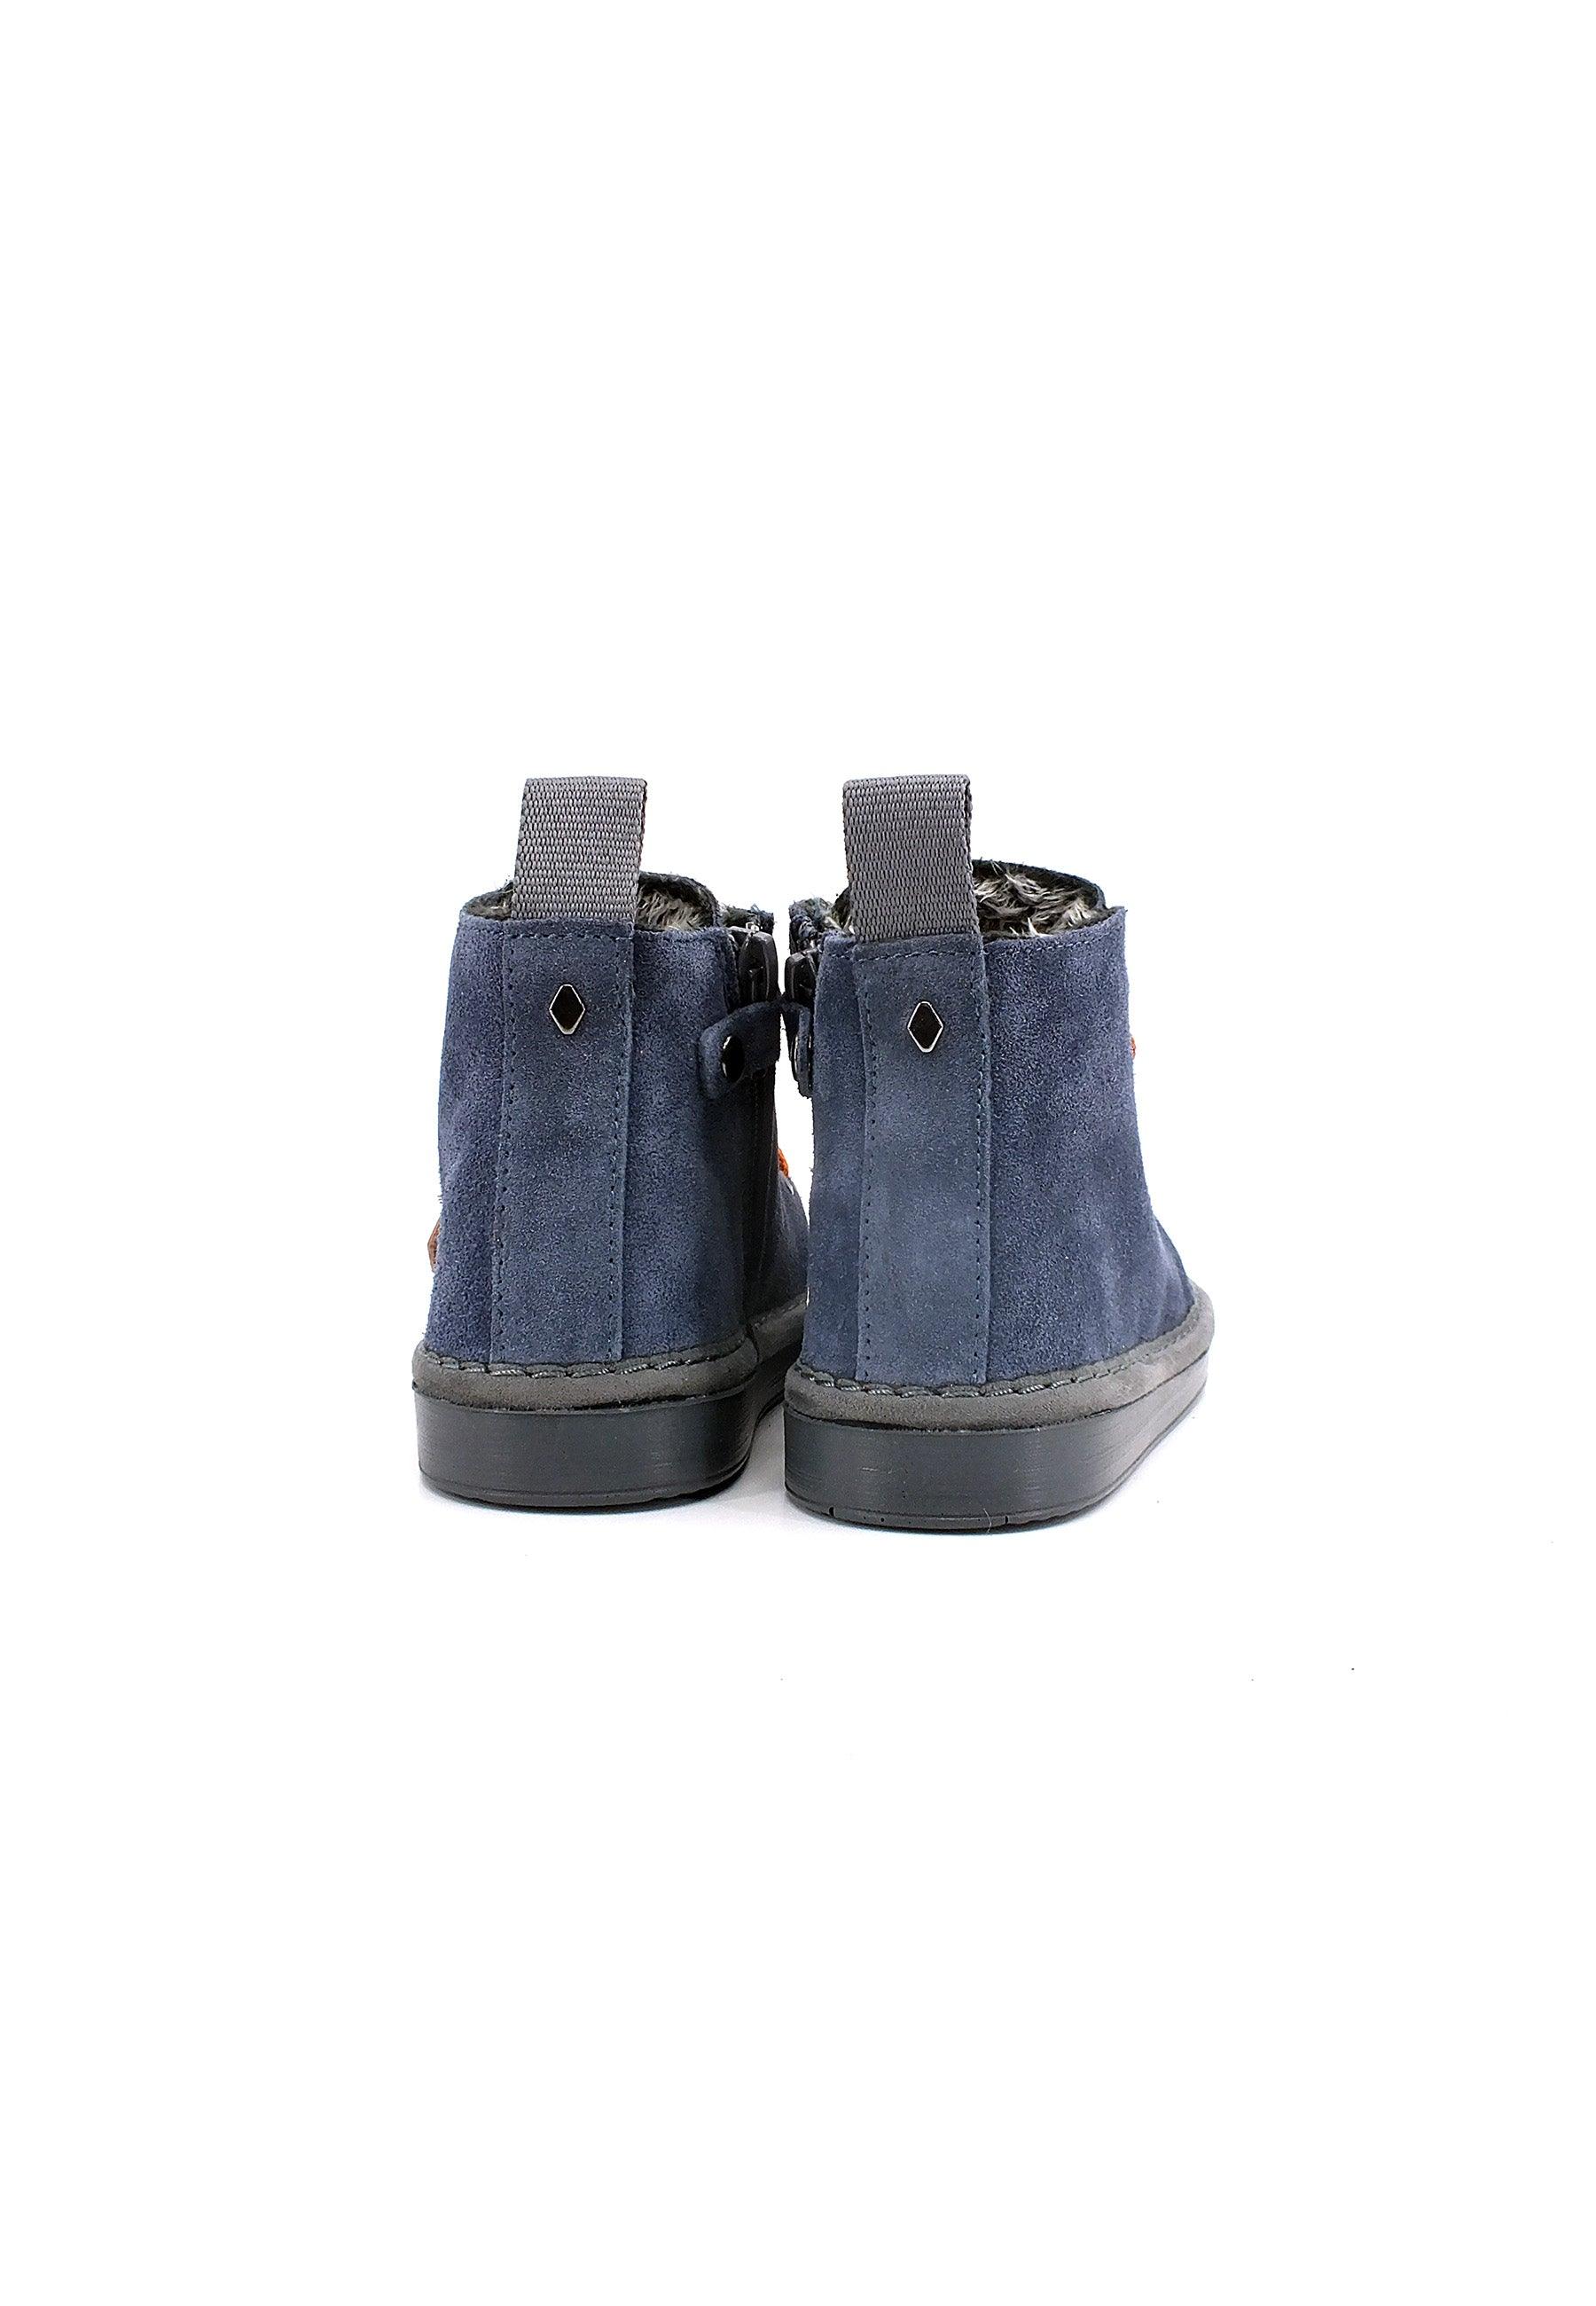 PAN CHIC Ankle Boot Sneaker Pelo Bimbo Dark Blue Burnt Orange P01B1400200006 - Sandrini Calzature e Abbigliamento